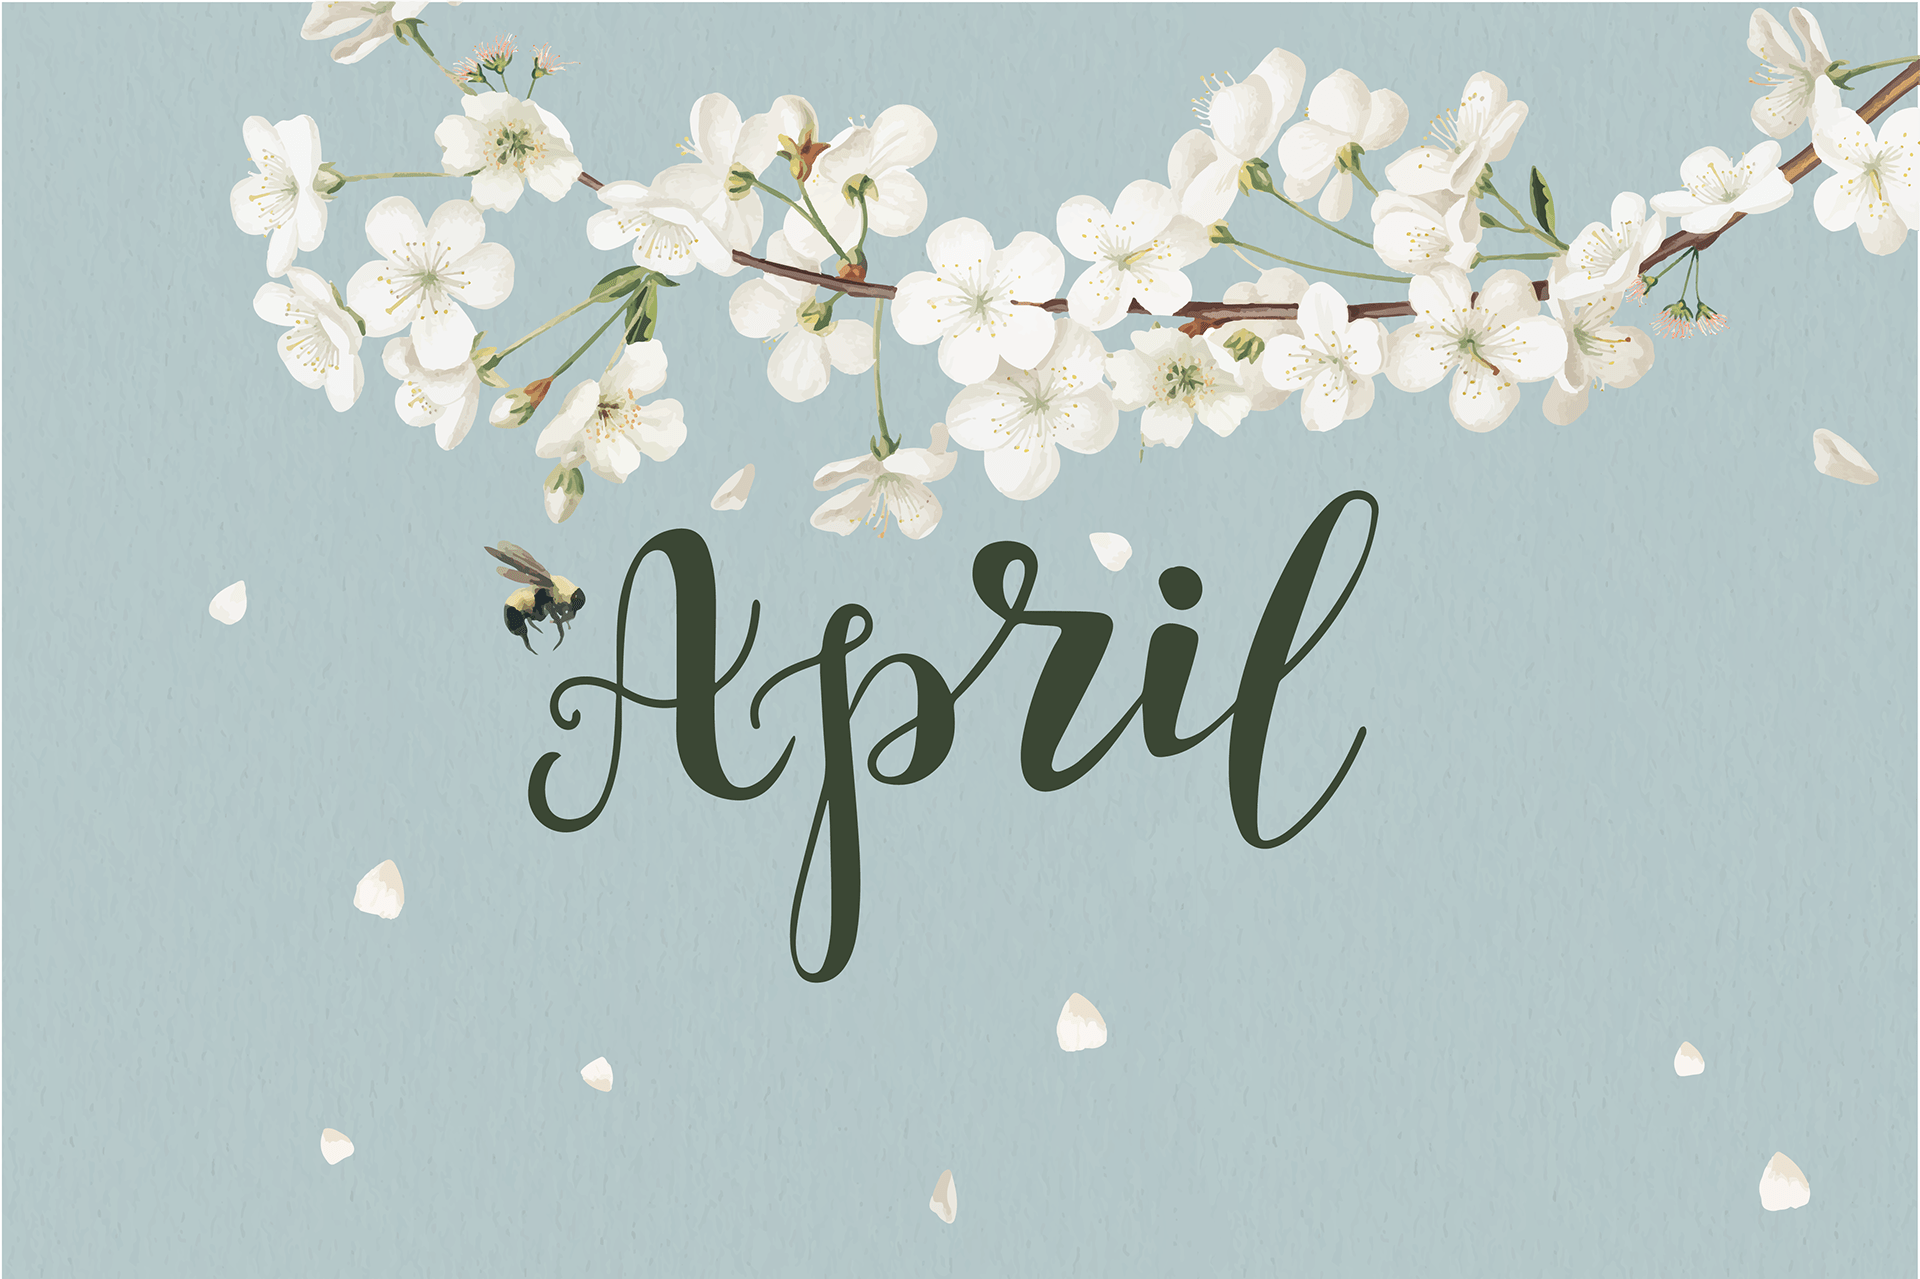 Hello content. Привет апрель. Hello April картинки. Апрель картинки с надписью. Обои с надписью март.